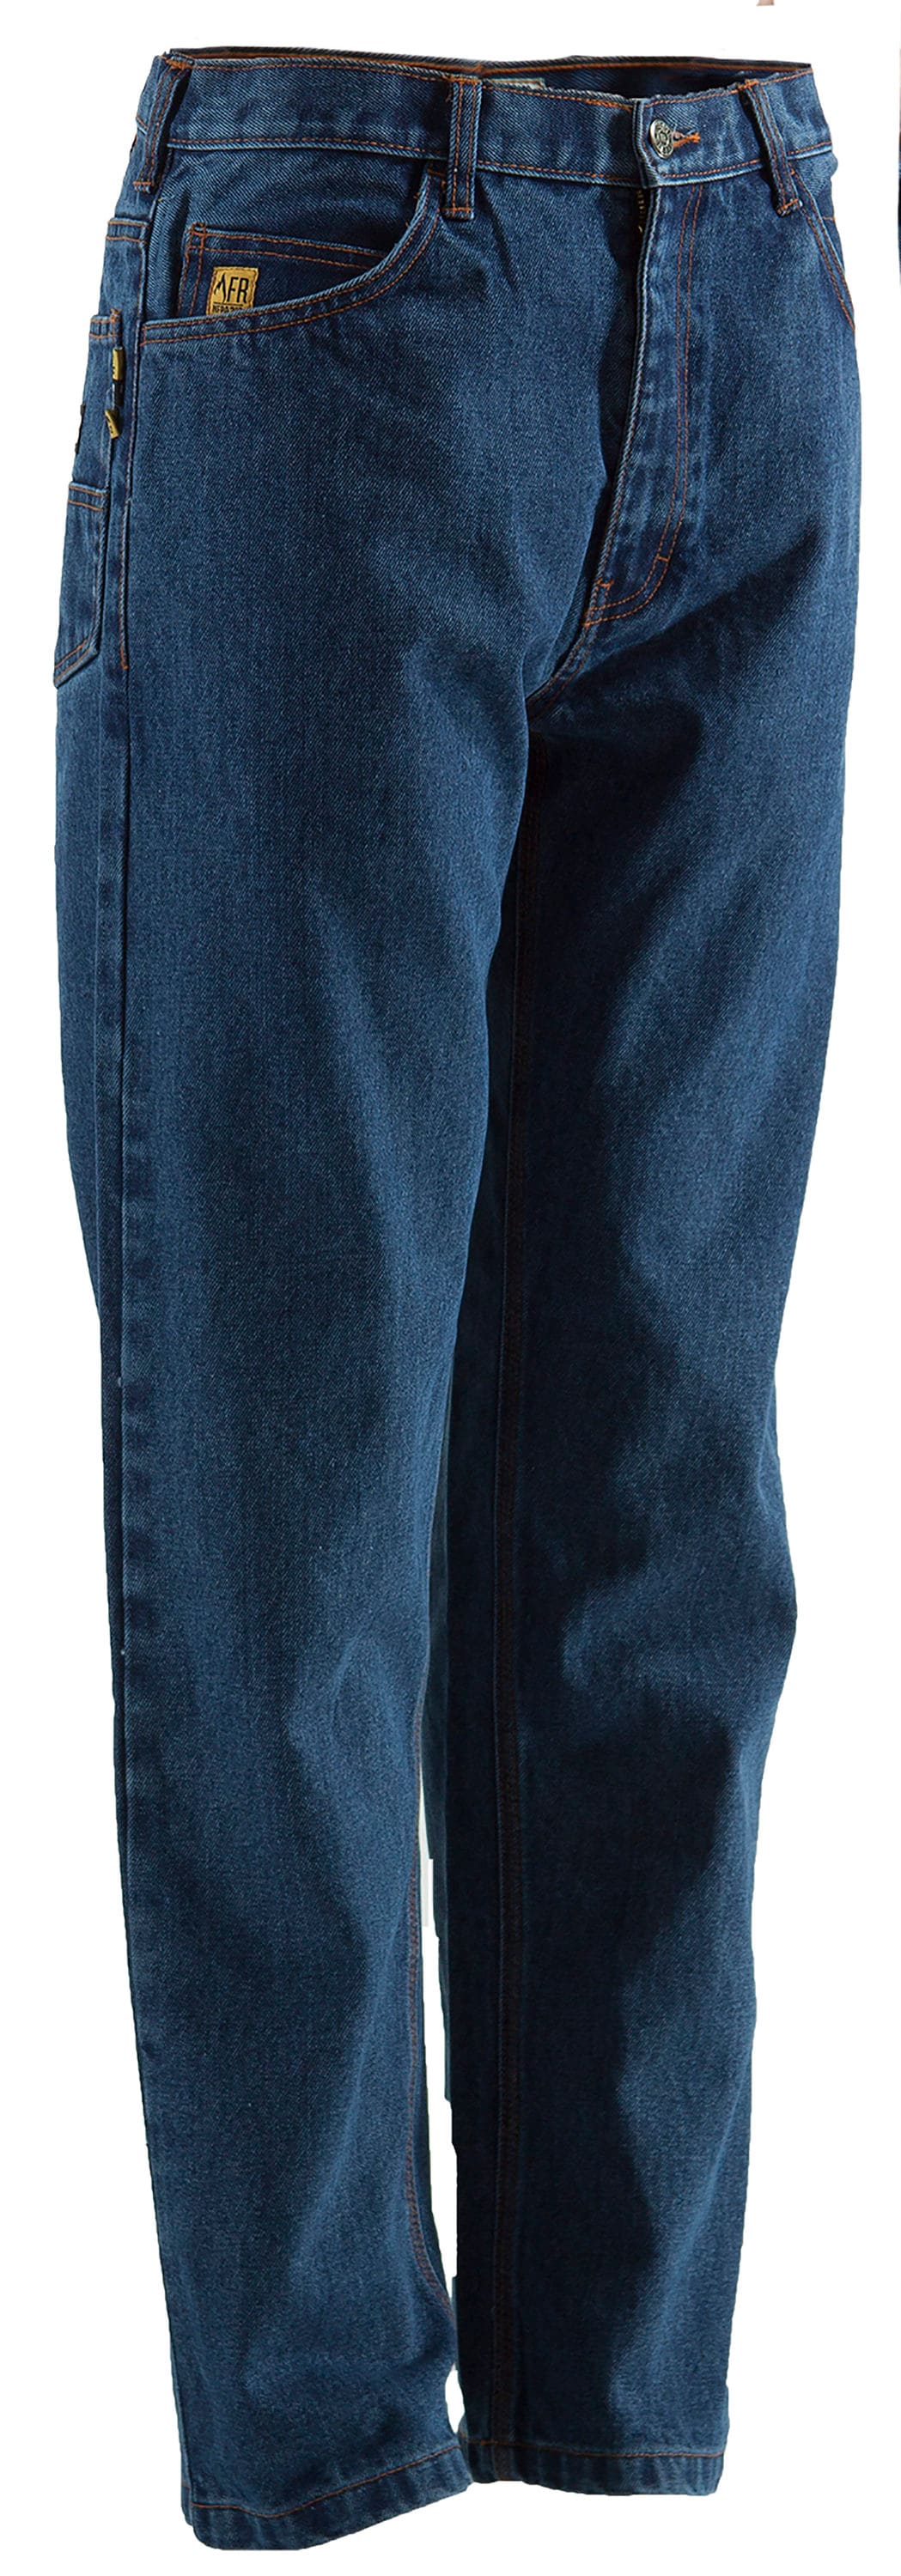 NWT Mens Jeans size W34 x L32, denim jeans slim fit dark wash BGA-0271 |  eBay